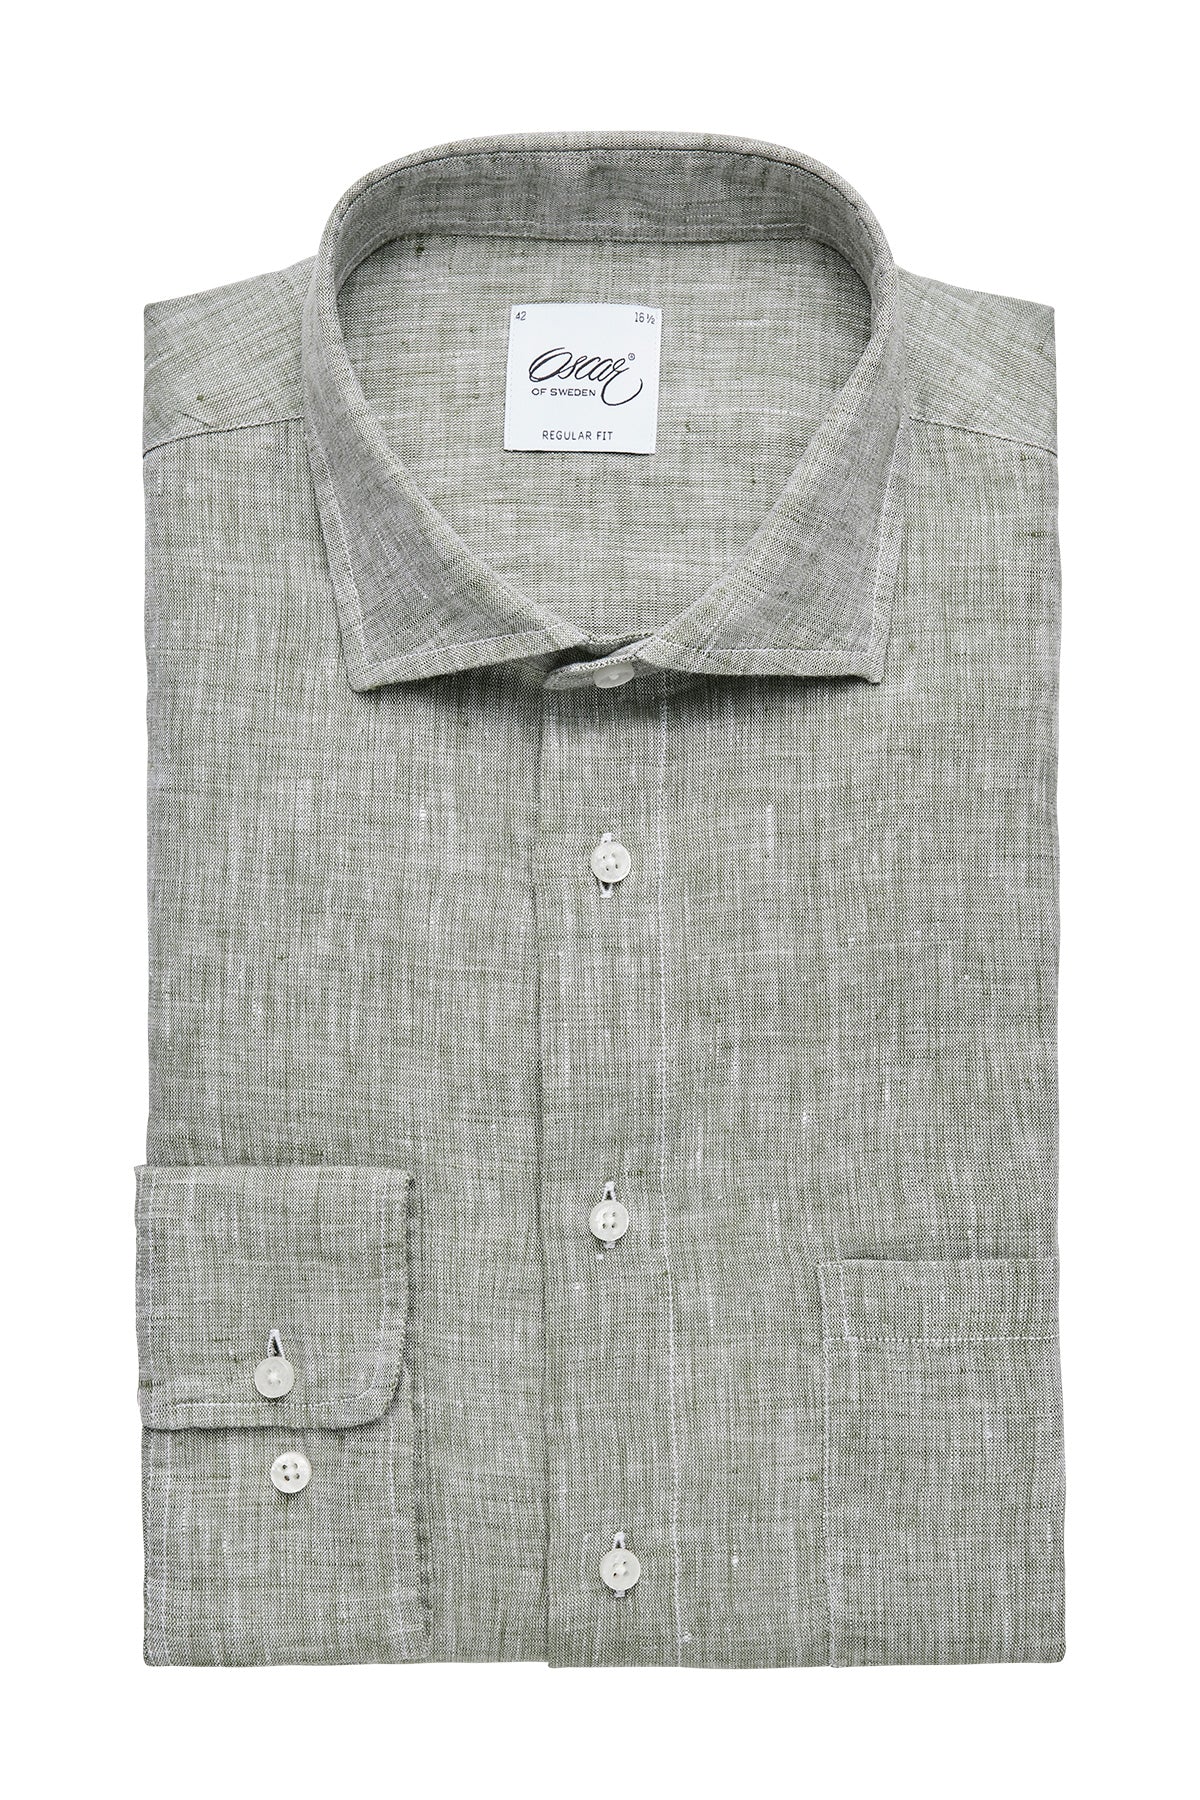 Green regular fit linen shirt